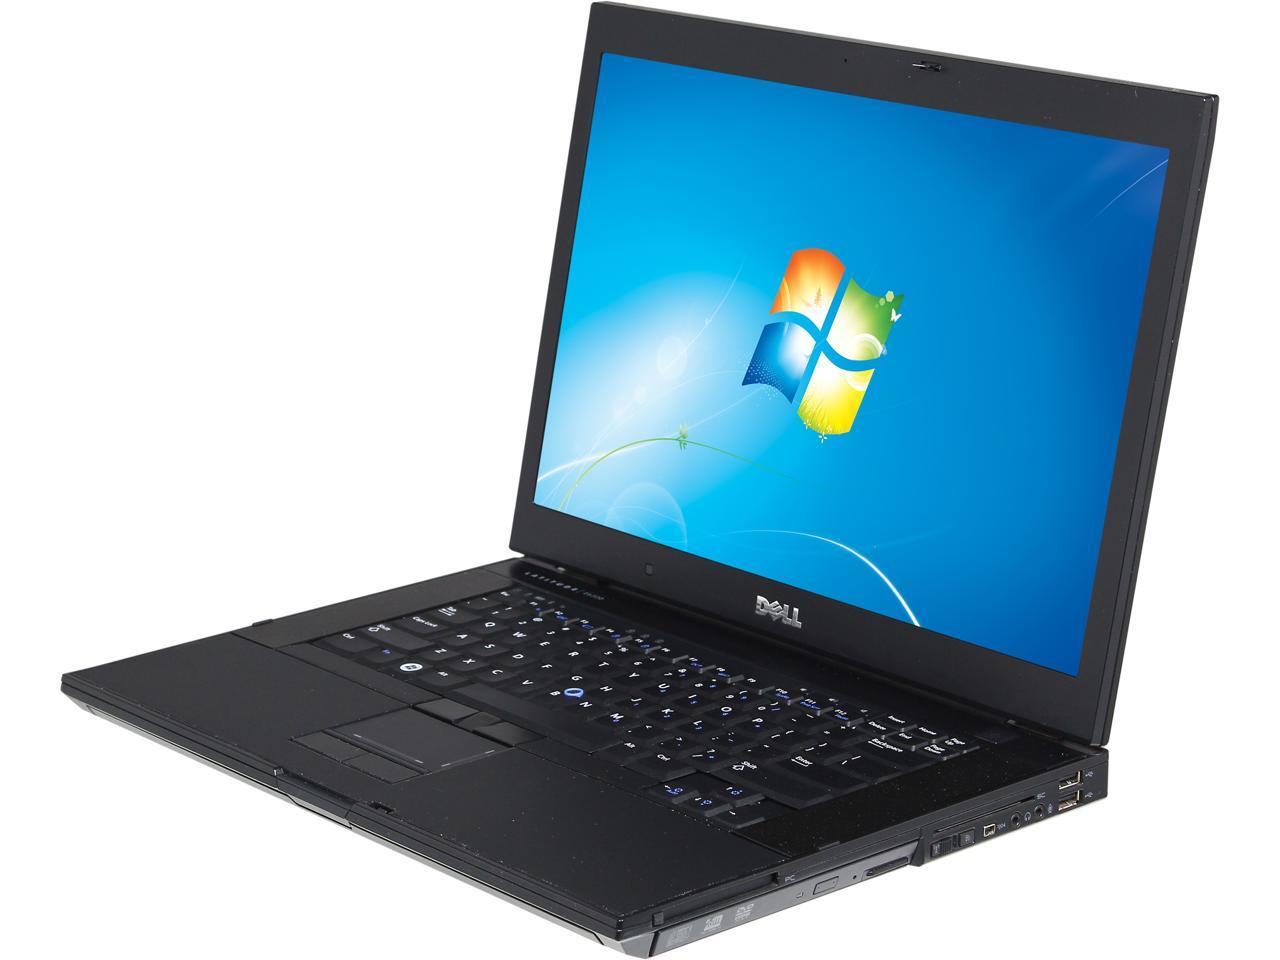 Refurbished: DELL Laptop Latitude E6500 Intel Core 2 Duo 2.53GHz 4GB